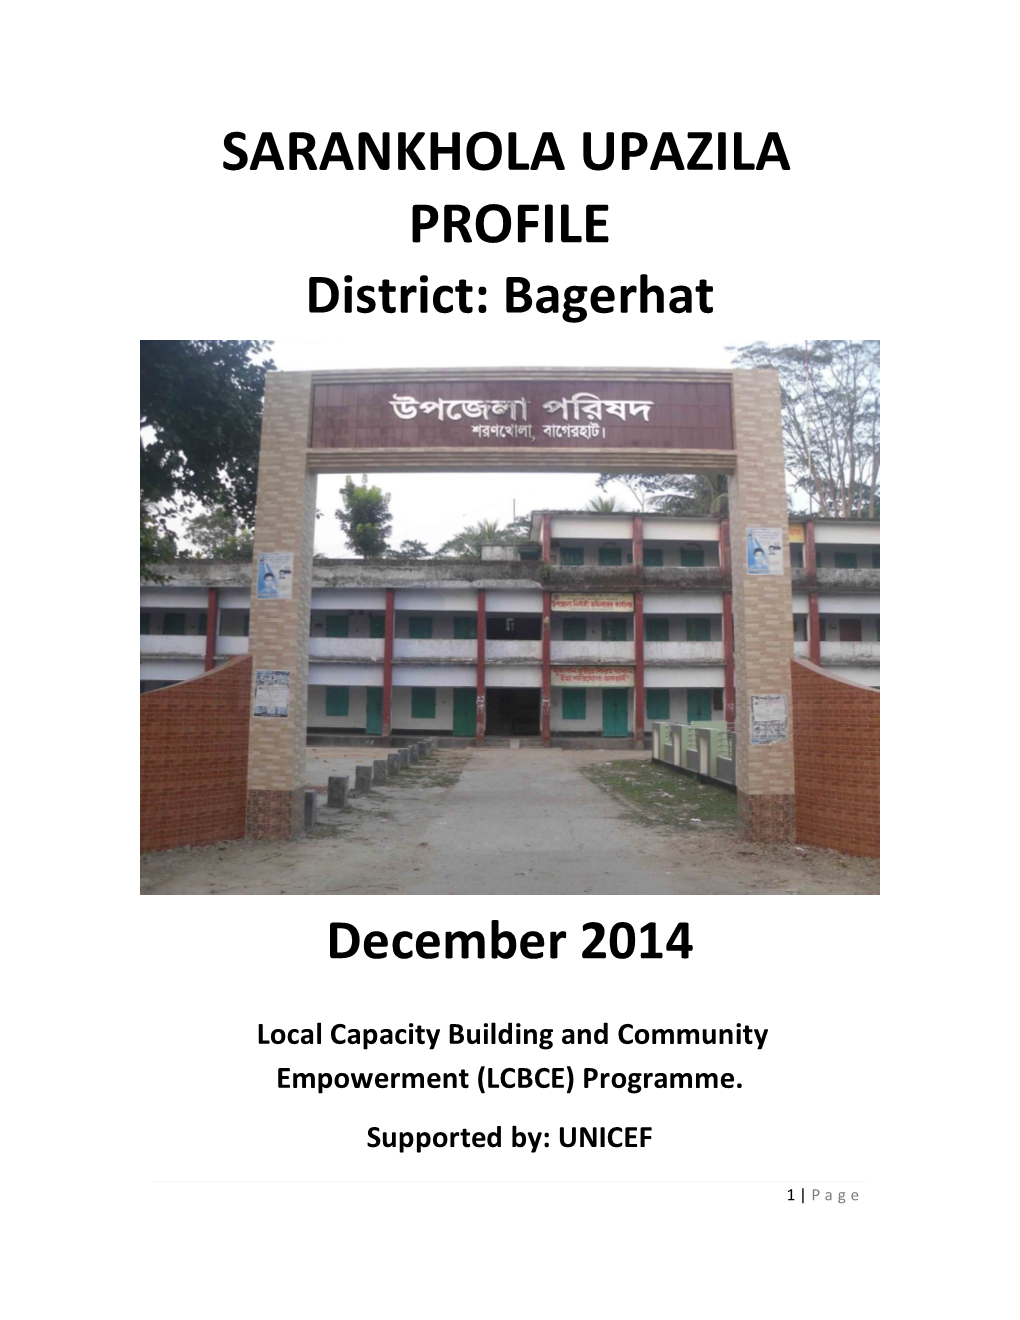 Sarankhola Upazila Profile